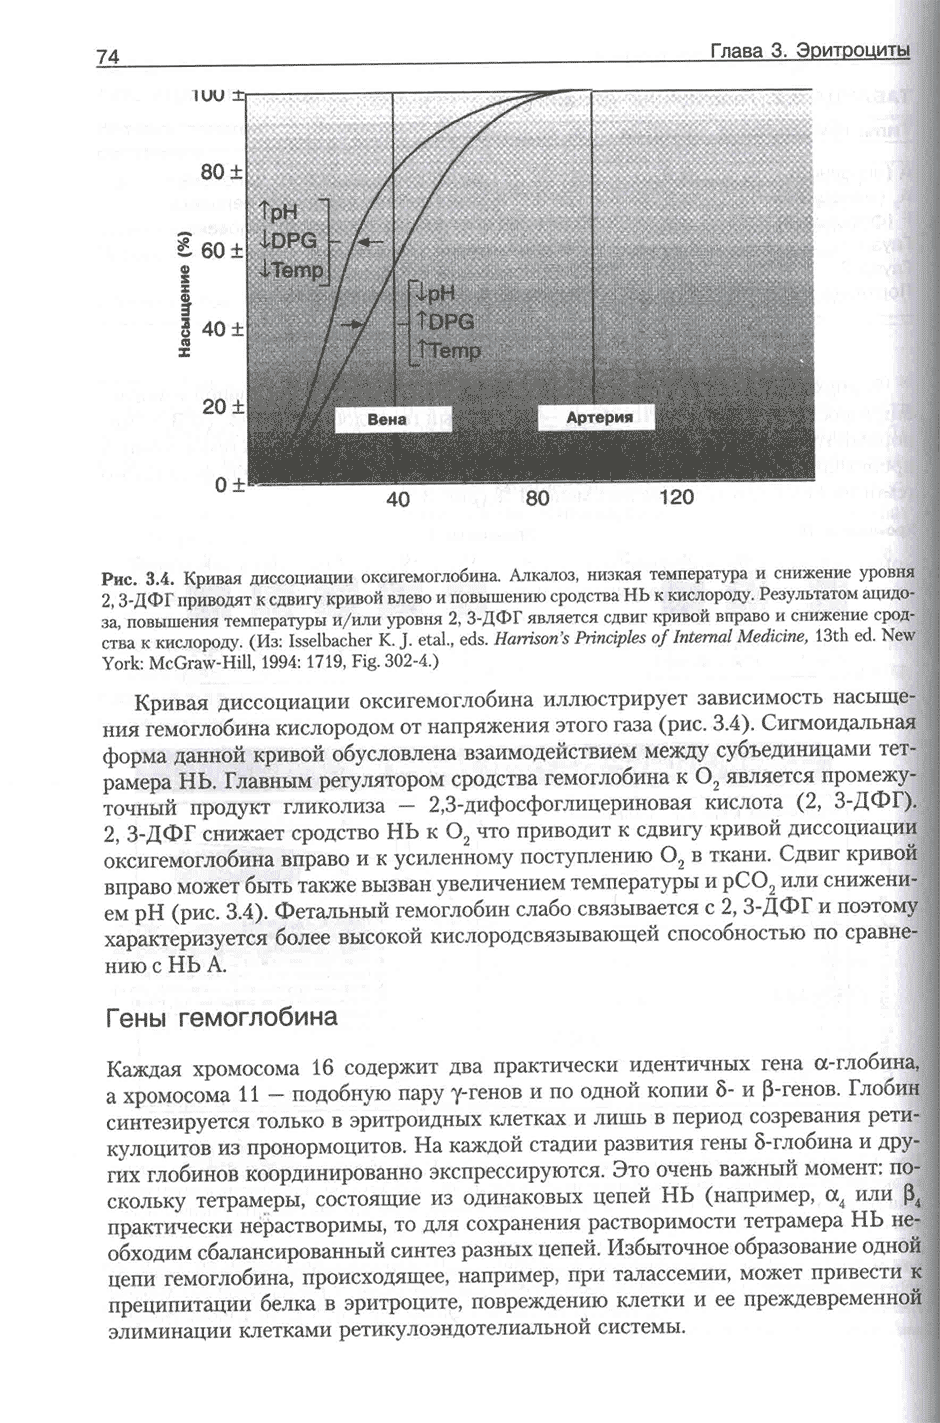 Пример страницы из книги "Патофизиология крови" - Шиффман Ф. Дж.